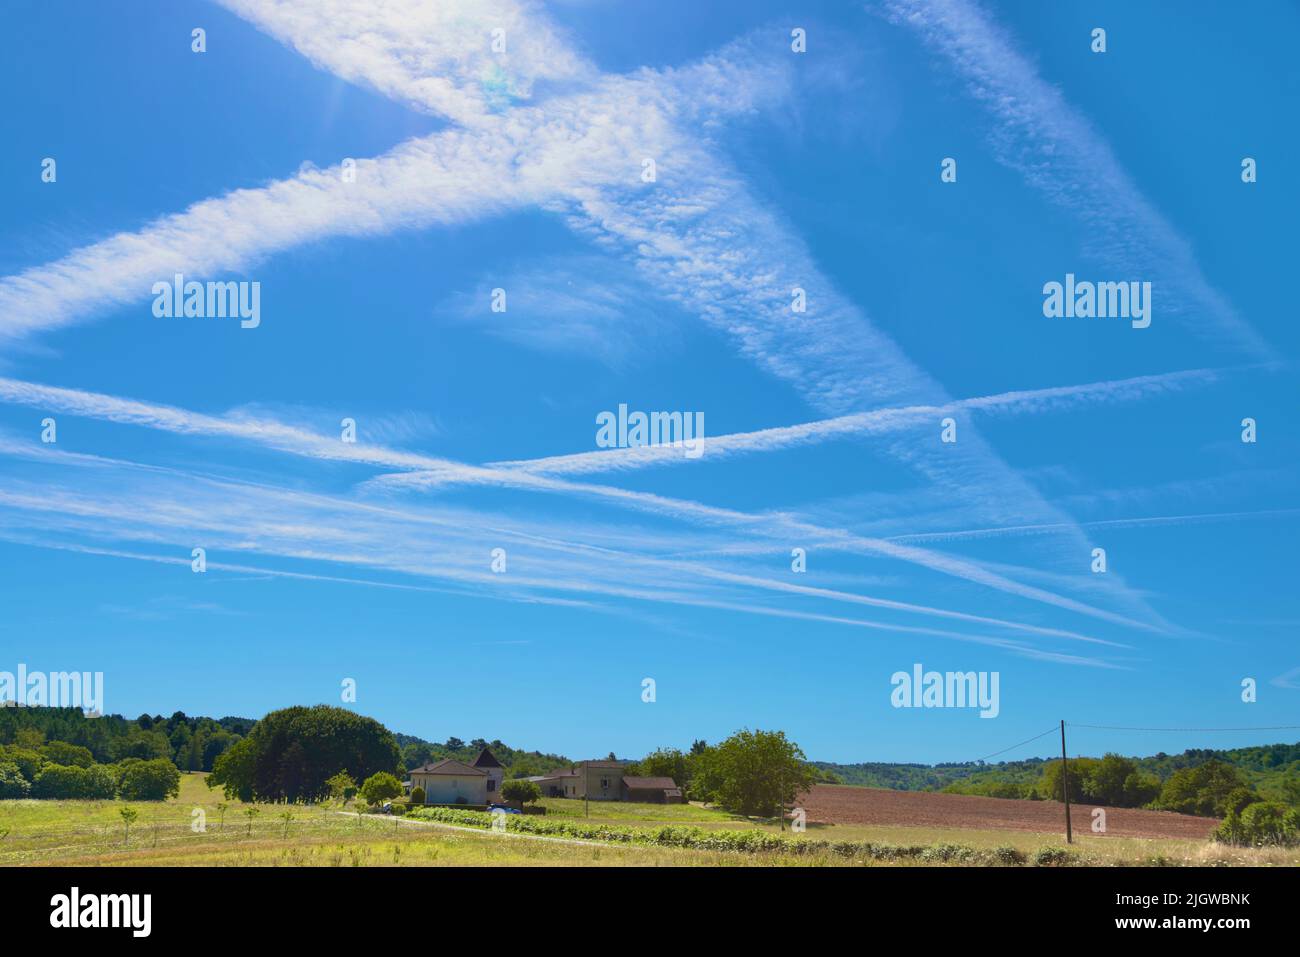 13 luglio 2022. Lot et Garonne, Francia sud-occidentale. I percorsi del vapore dell'aeroplano attraversano un cielo blu chiaro fra i riscaldamenti della siccità e le limitazioni di uso dell'acqua per l'agricoltura. Foto Stock